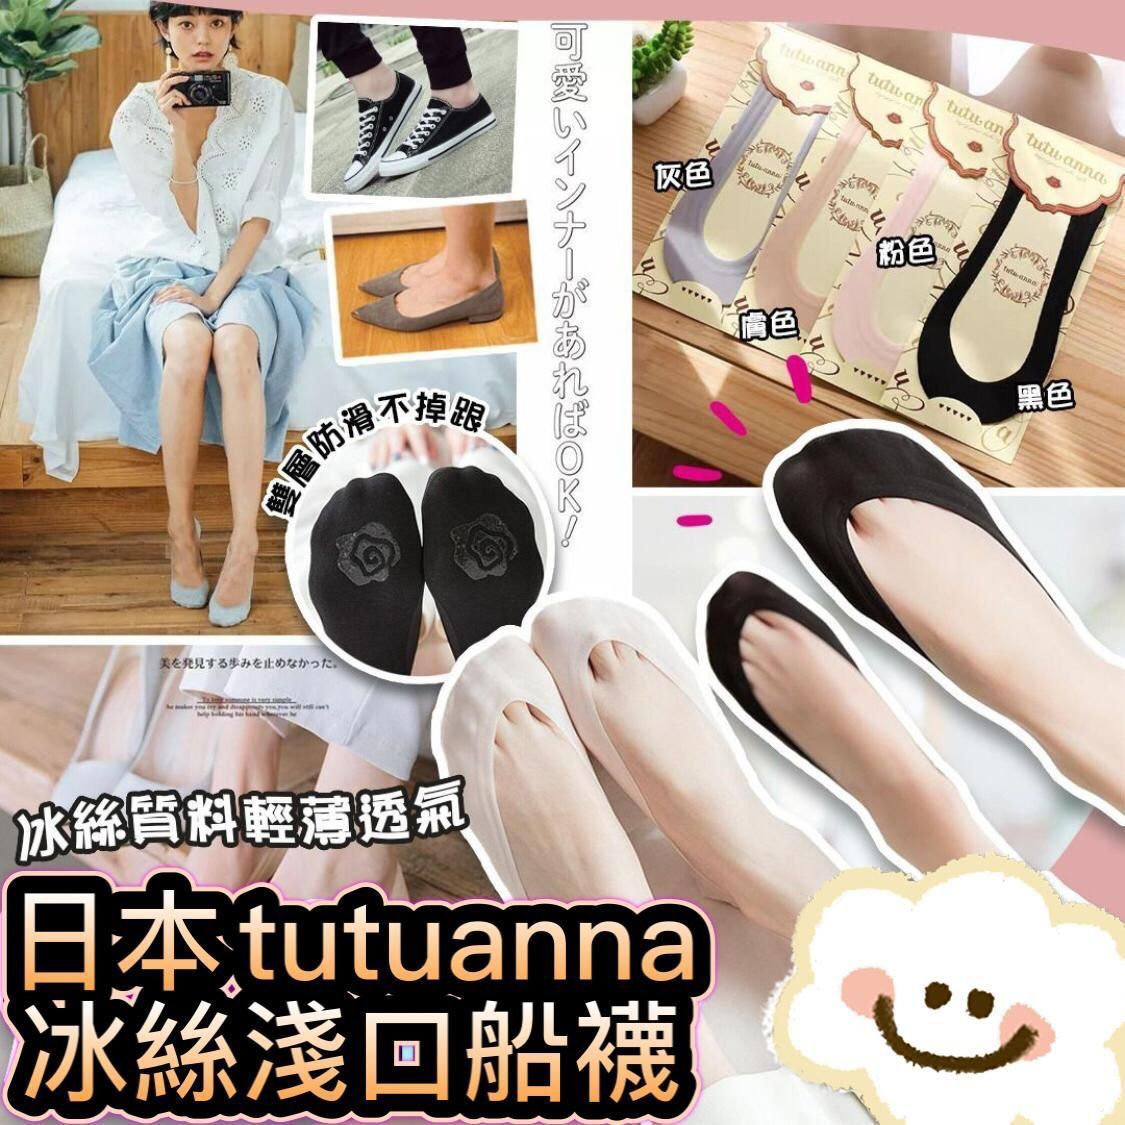 日本 Tutuanna冰絲淺口船襪 (一套5對每色各1)